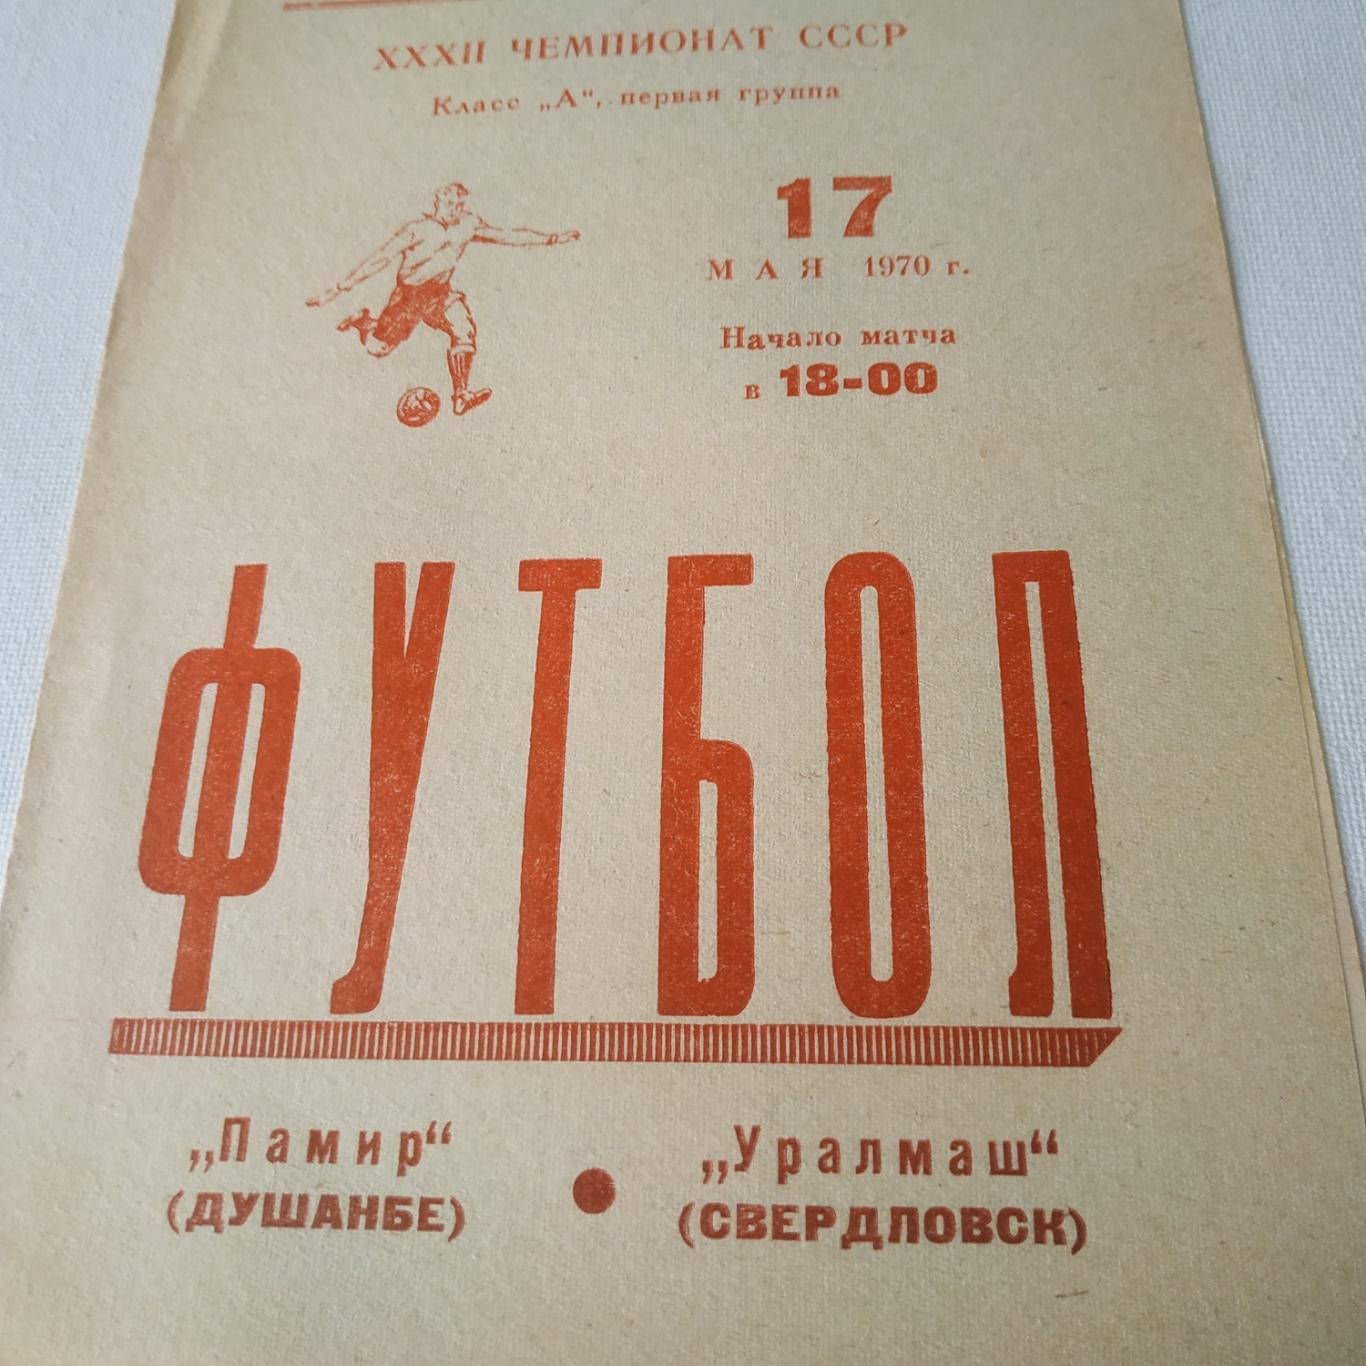 Памир (Душанбе) - Уралмаш (Свердловск) 1970